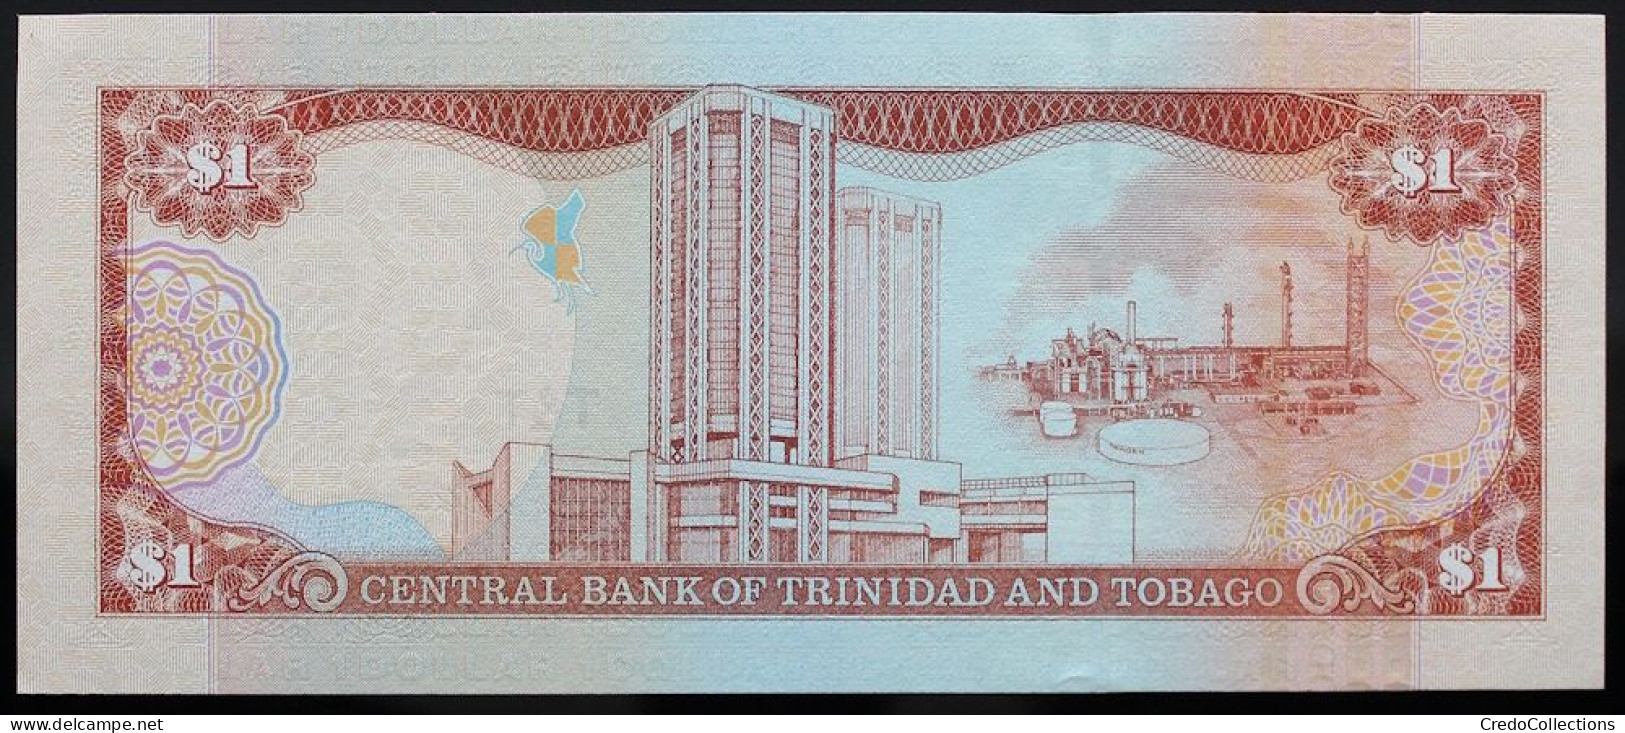 Trinitad Et Tobago - 1 Dollar - 2002 - PICK 41 - NEUF - Trinité & Tobago